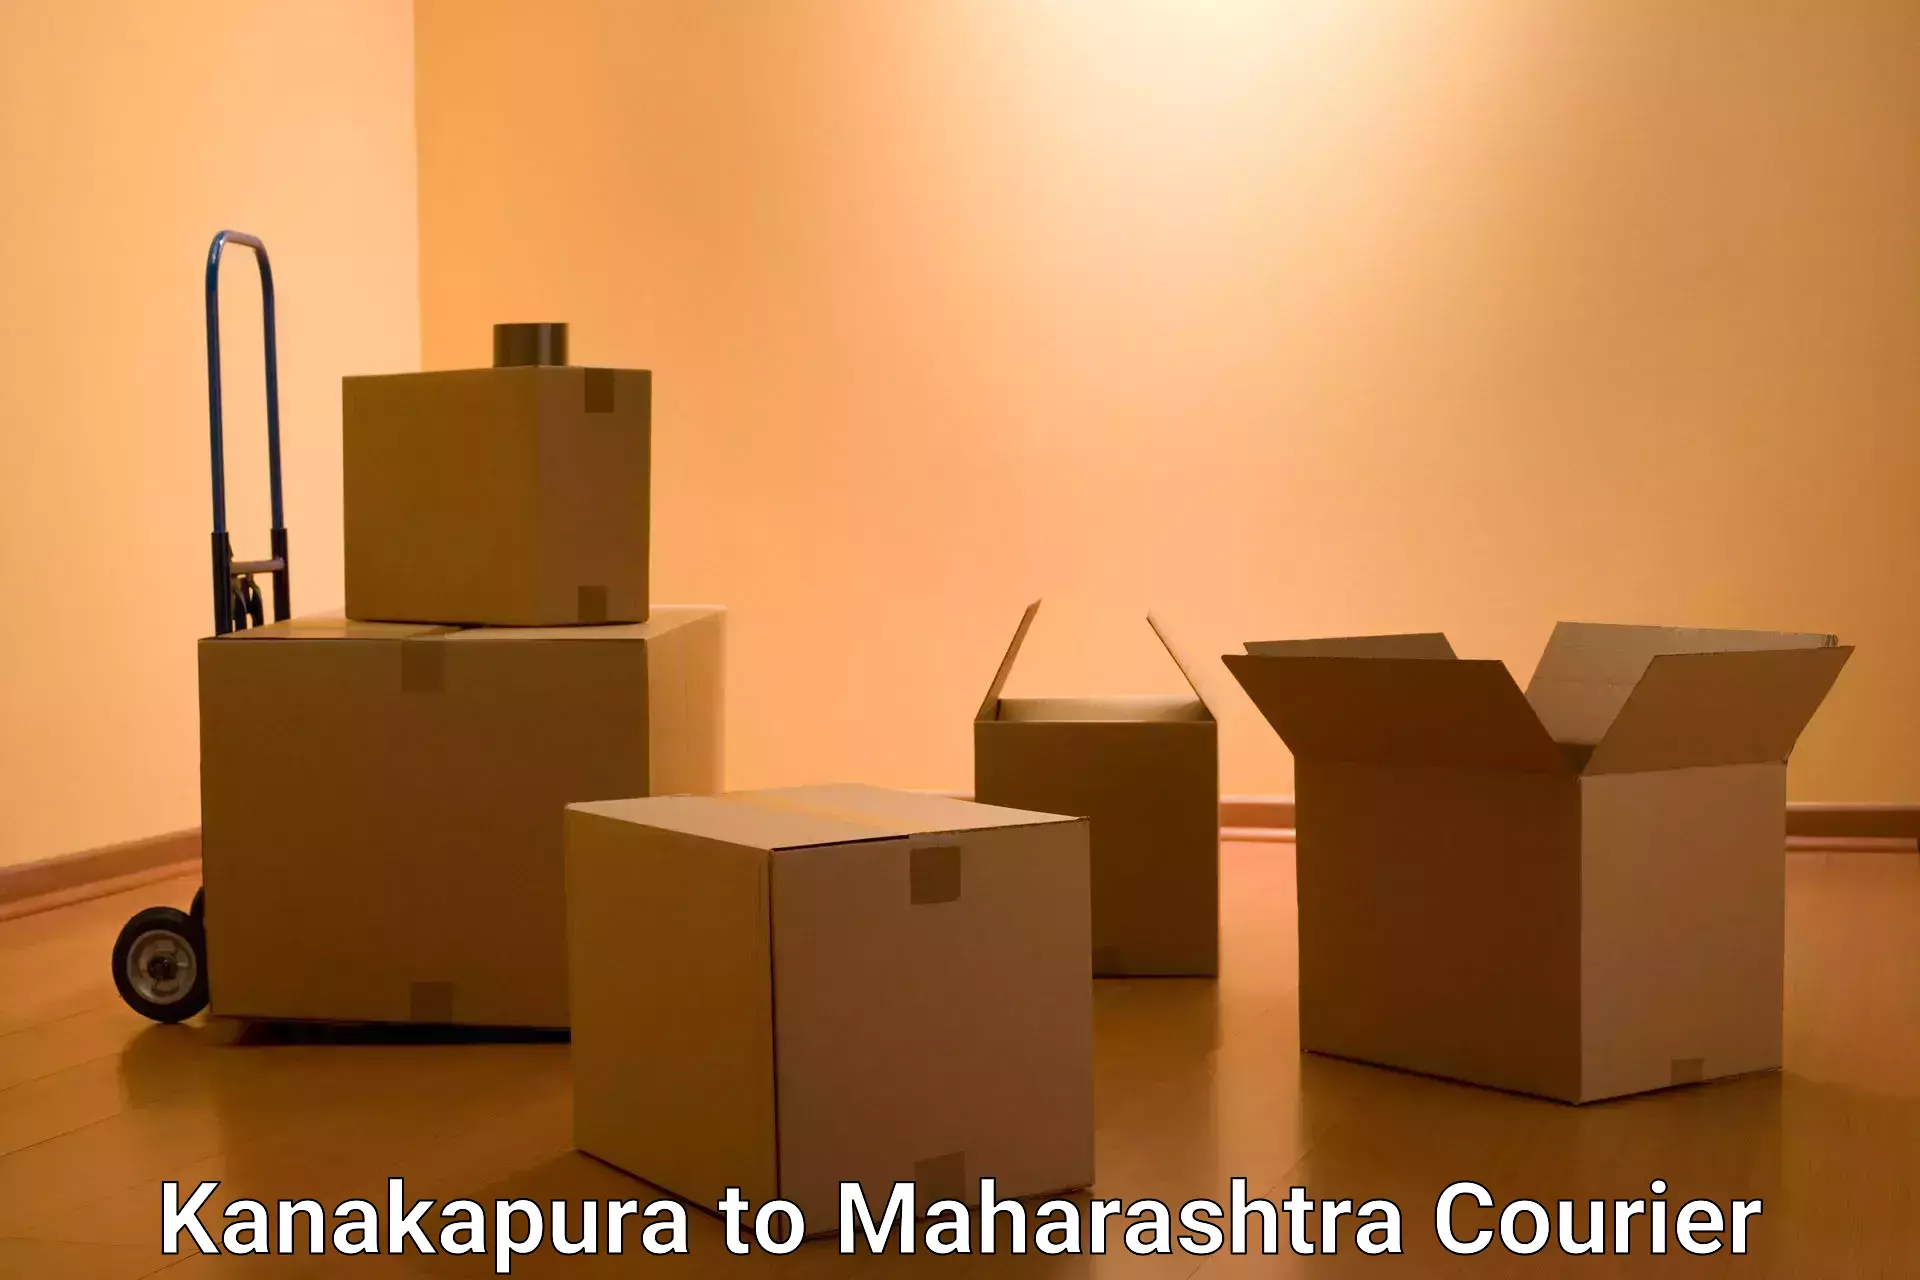 Multi-national courier services Kanakapura to Vaduj